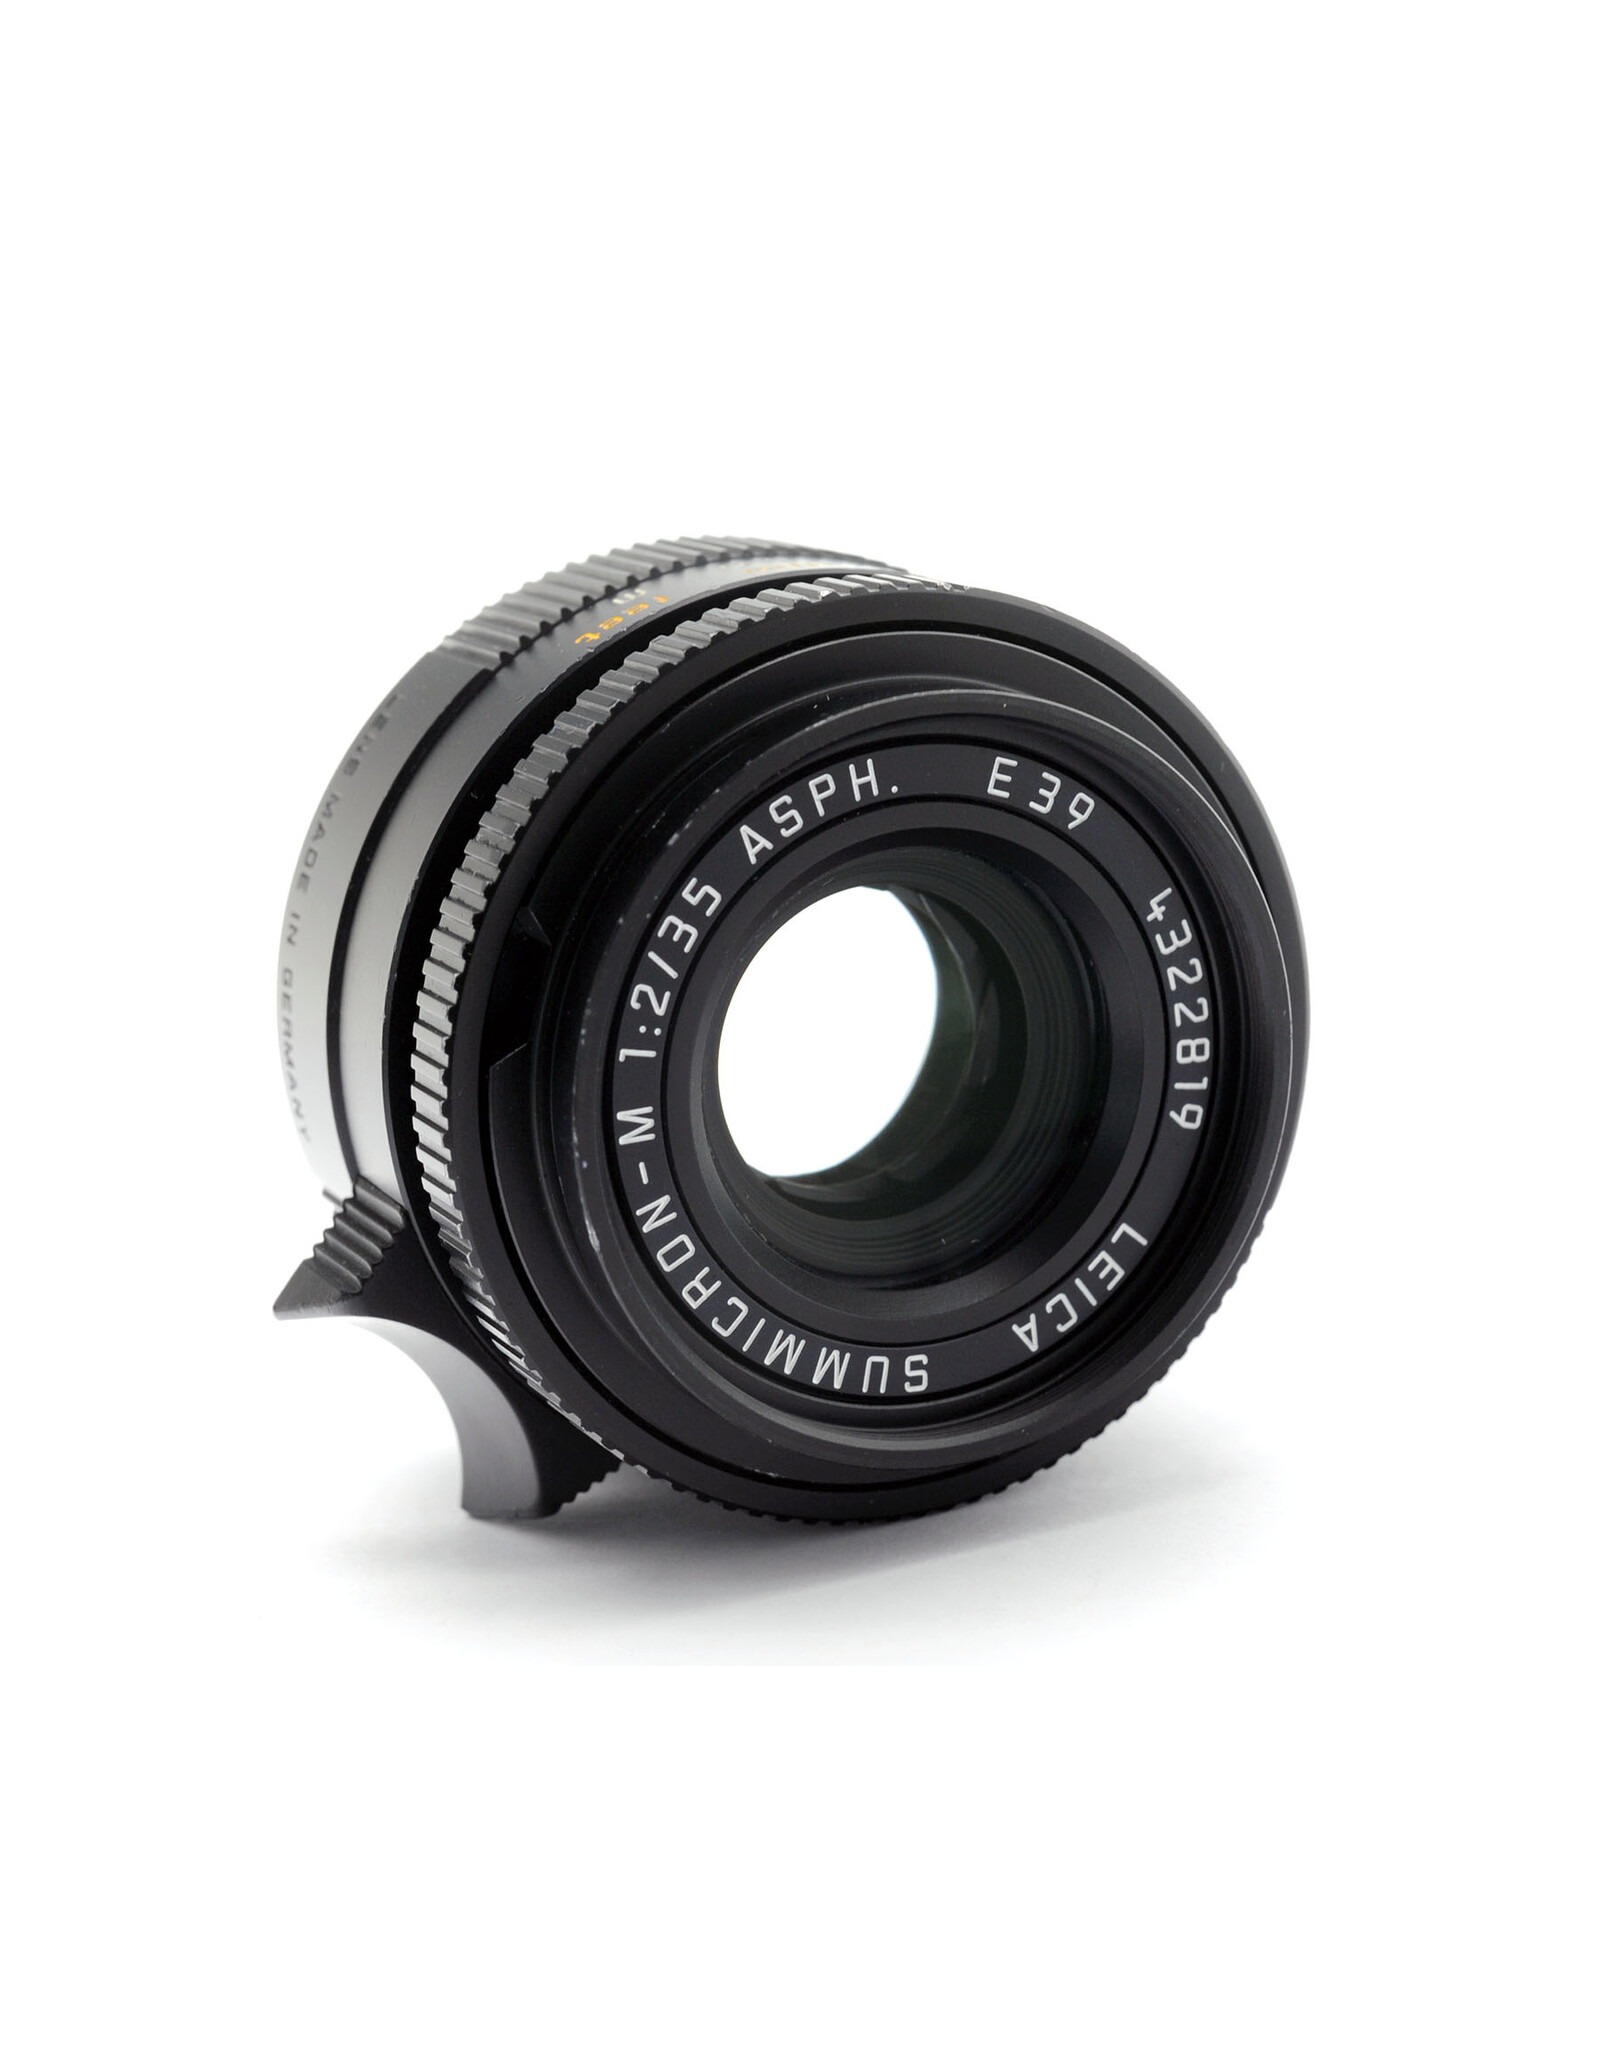 Leica Leica 35mm f2 Summicron-M ASPH 6 bit Black   A4042501